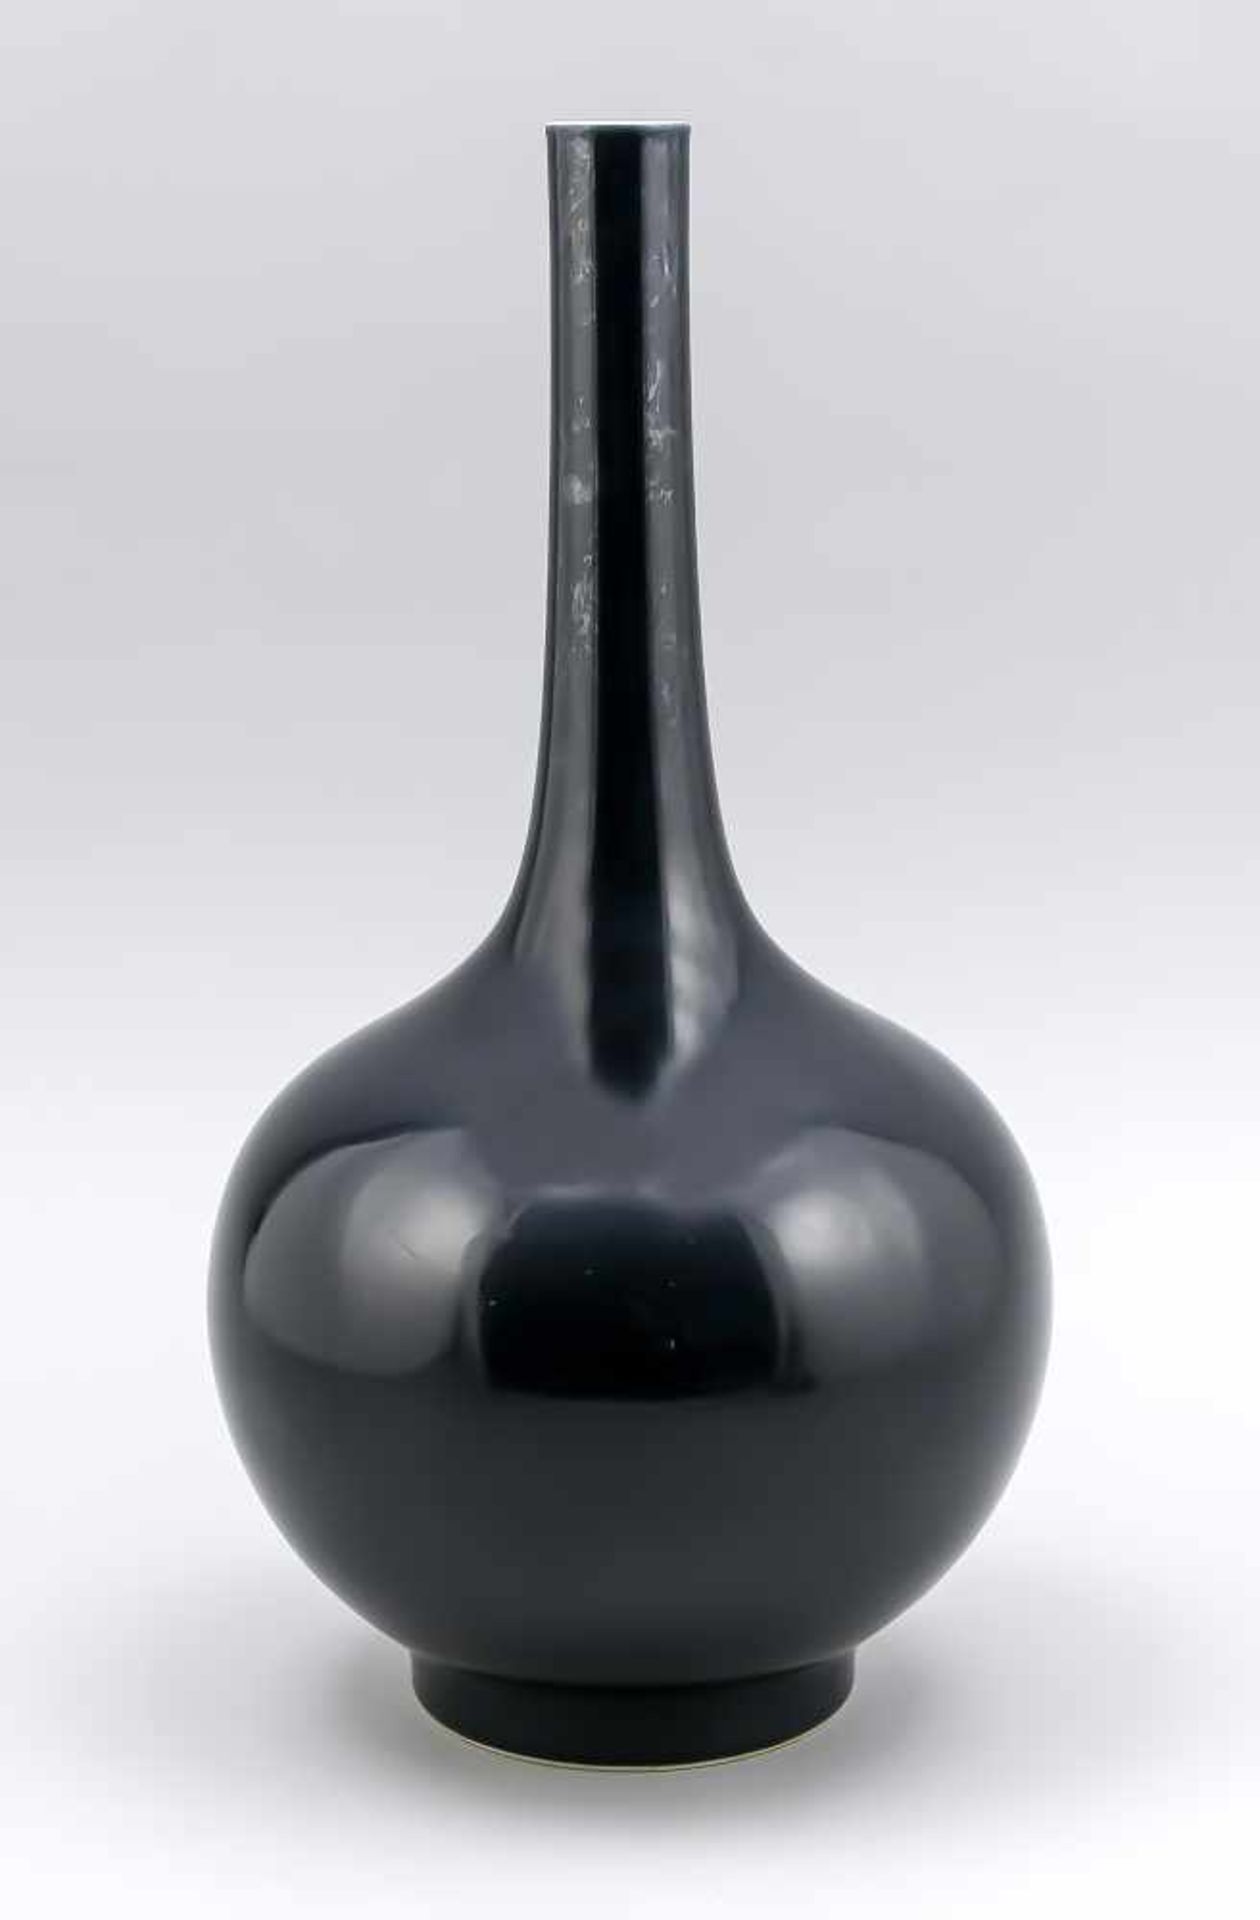 Monochrome Flaschenvase, China, 20. Jh.? Bauchiger Korpus auf zylindrischem Fußring,dunkelblaue